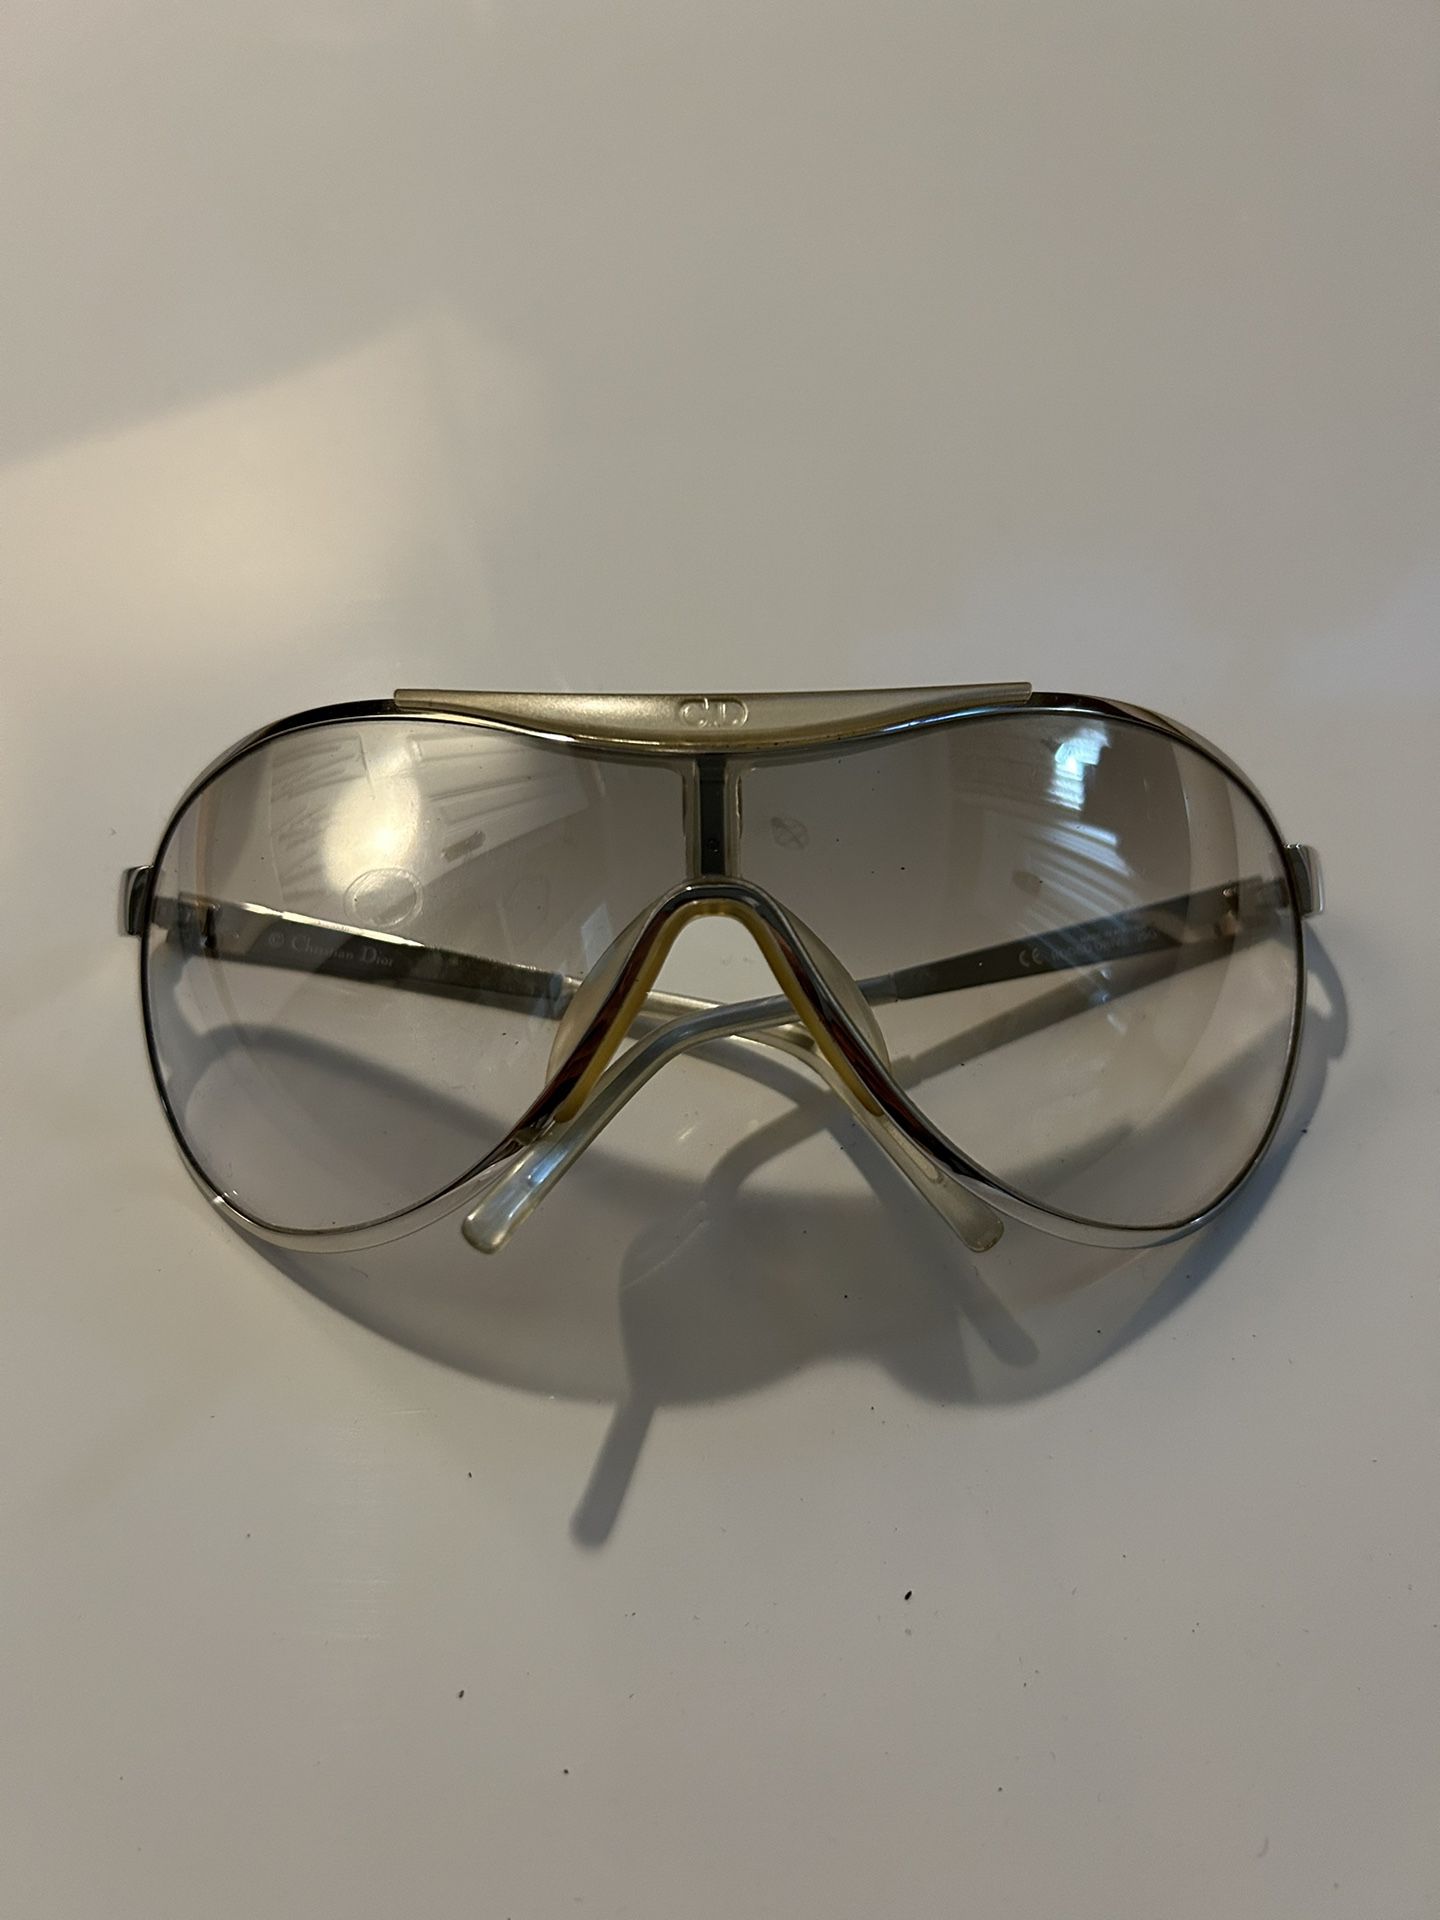 Christian Dior Wrap Aviator Sunglasses 